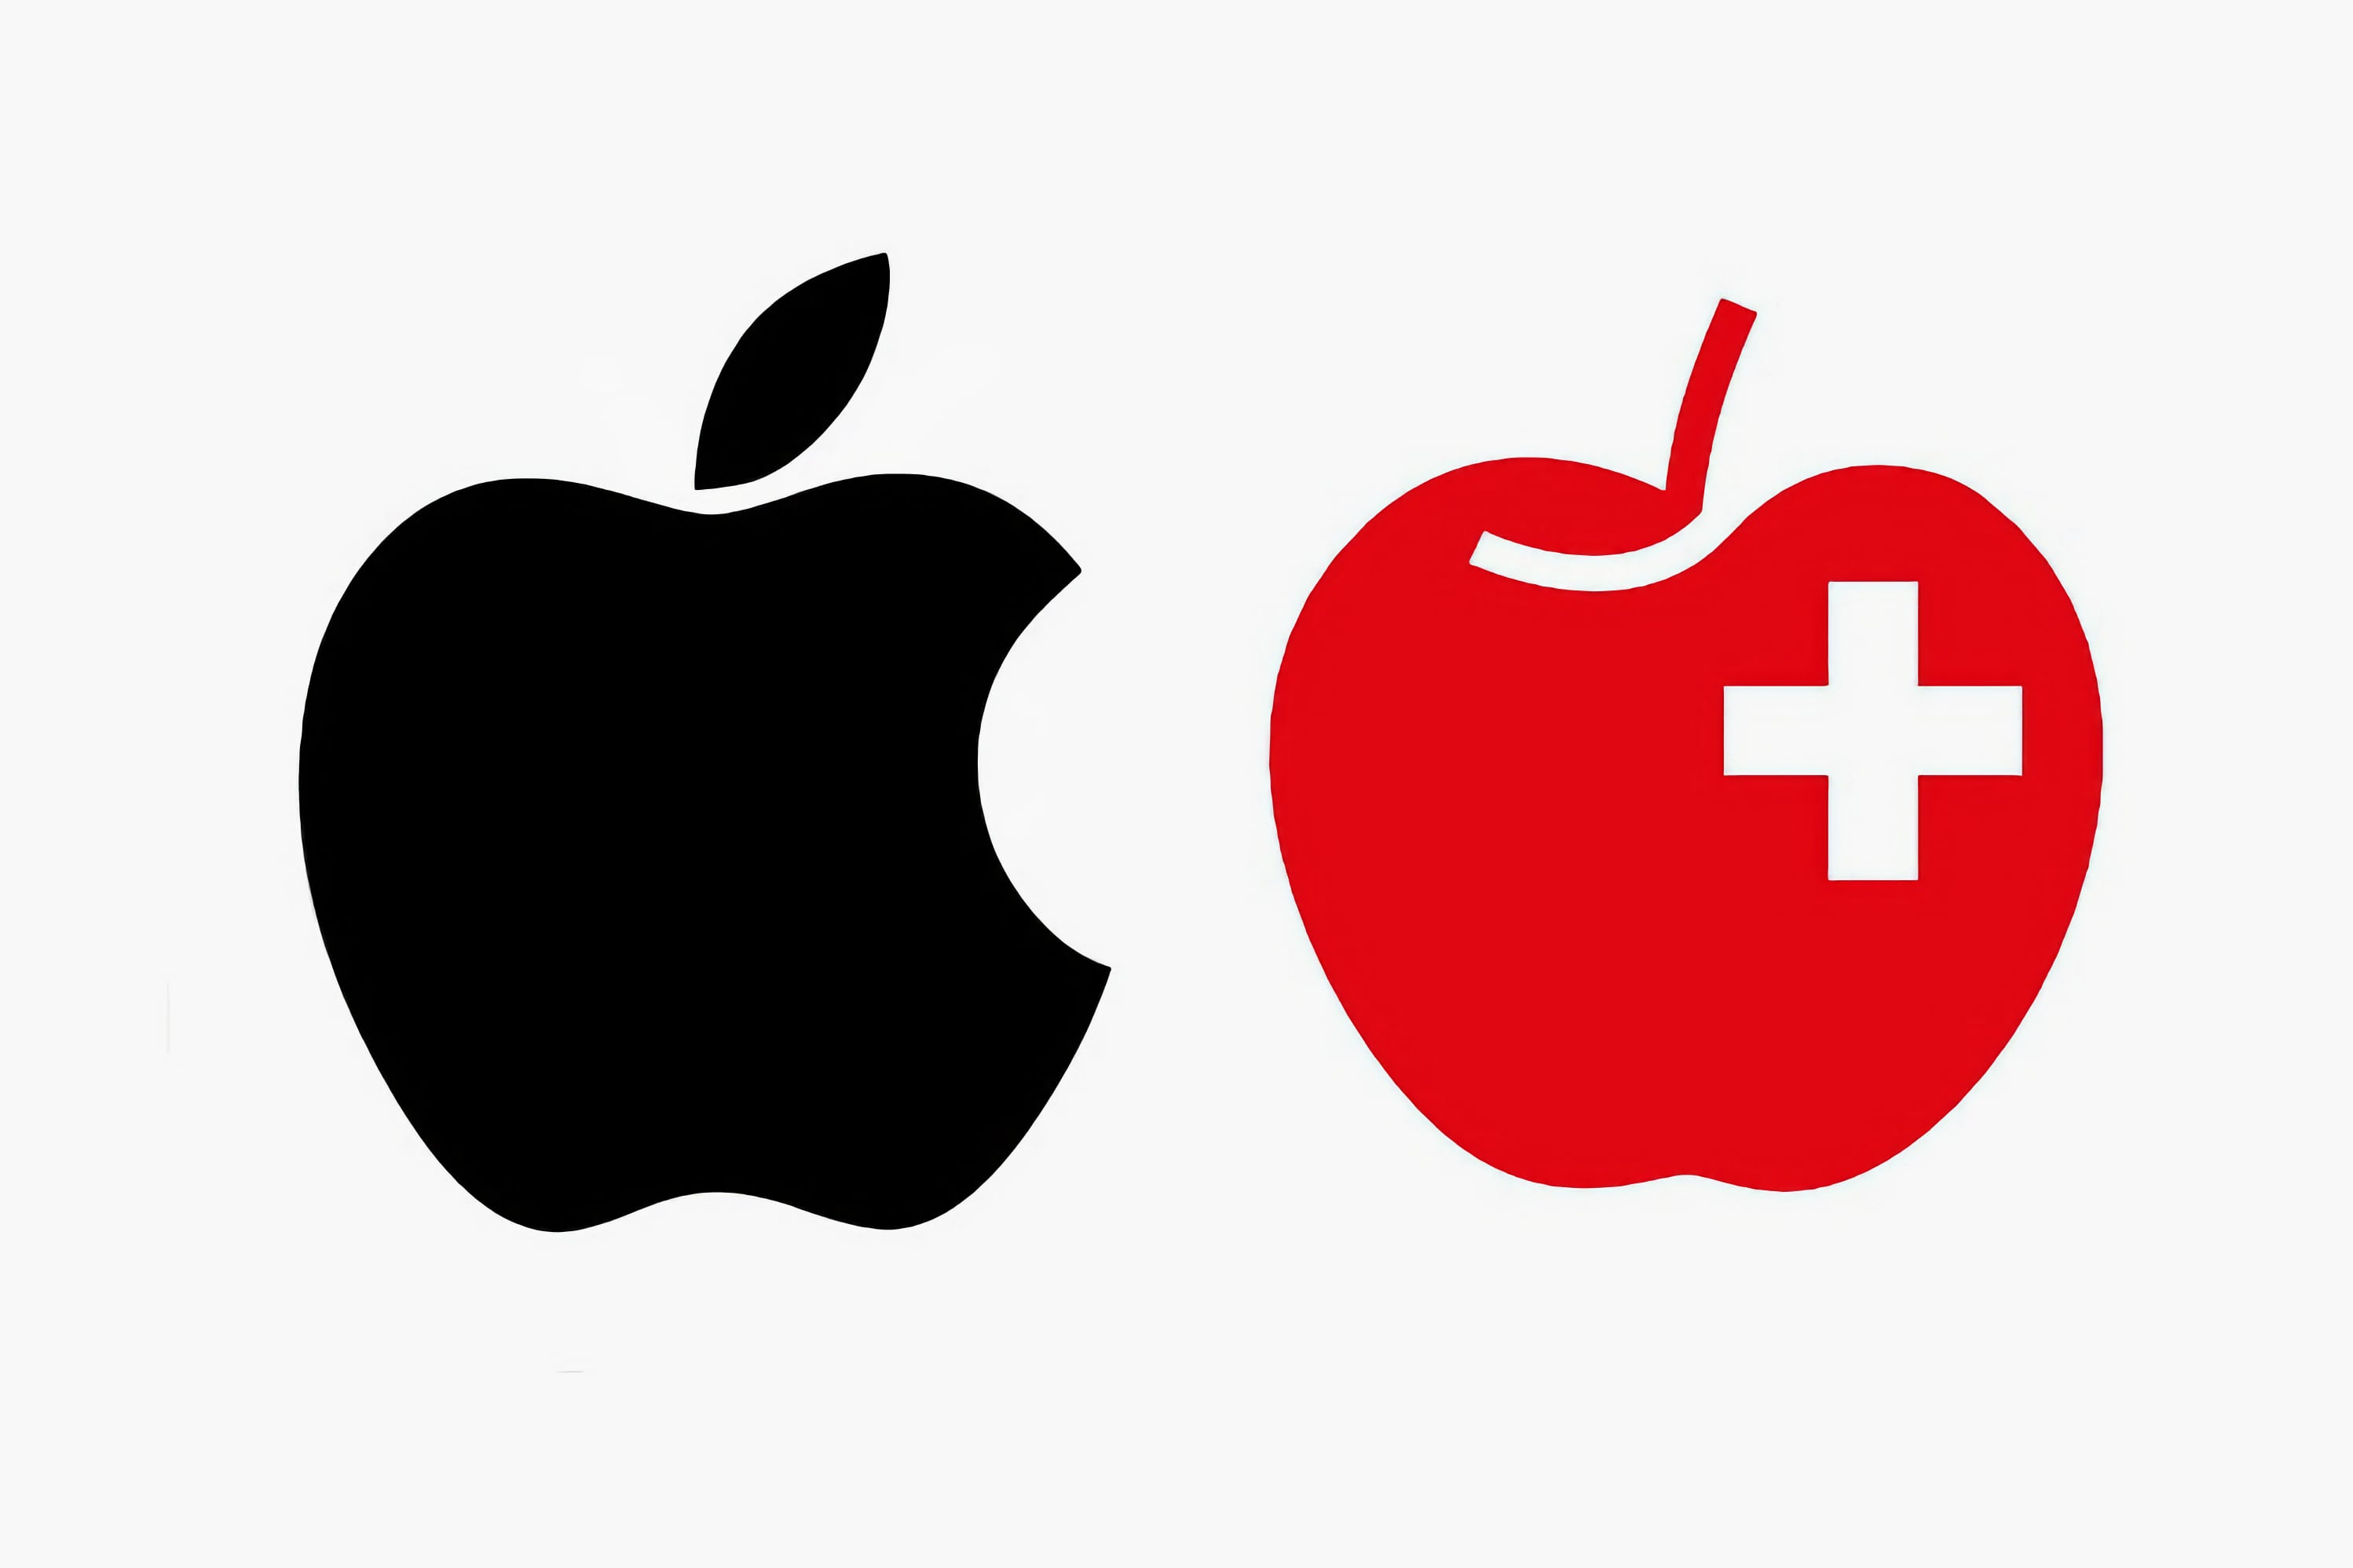 Apple хочет зарегистрировать яблоко в качестве товарного знака в Швейцарии. Да, сам фрукт, и фермеры против